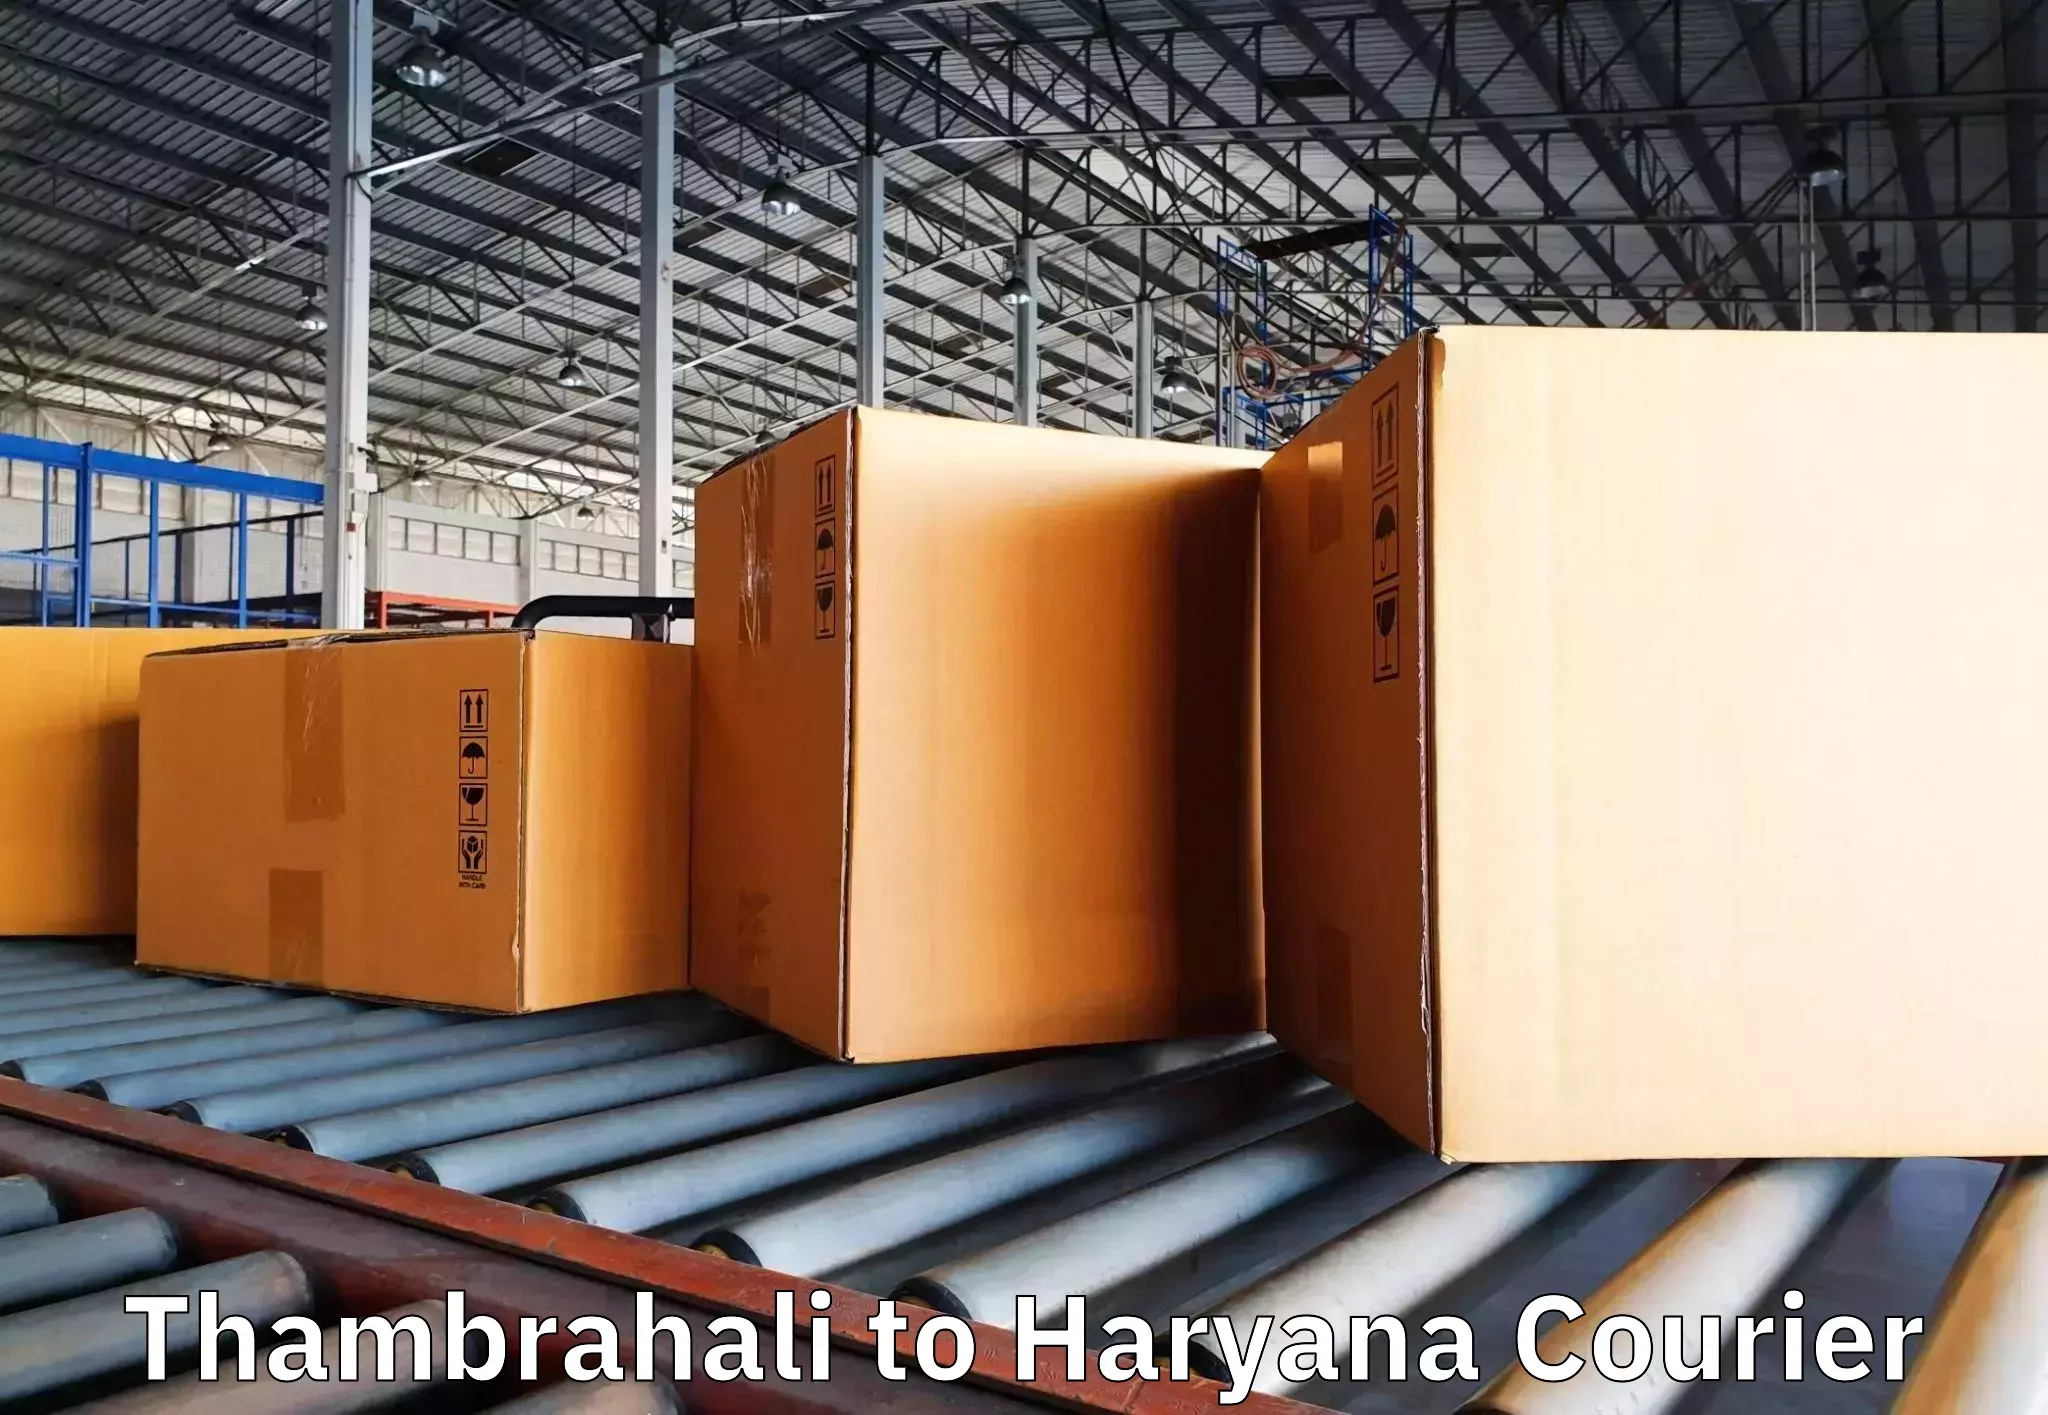 Efficient moving and packing Thambrahali to Ambala